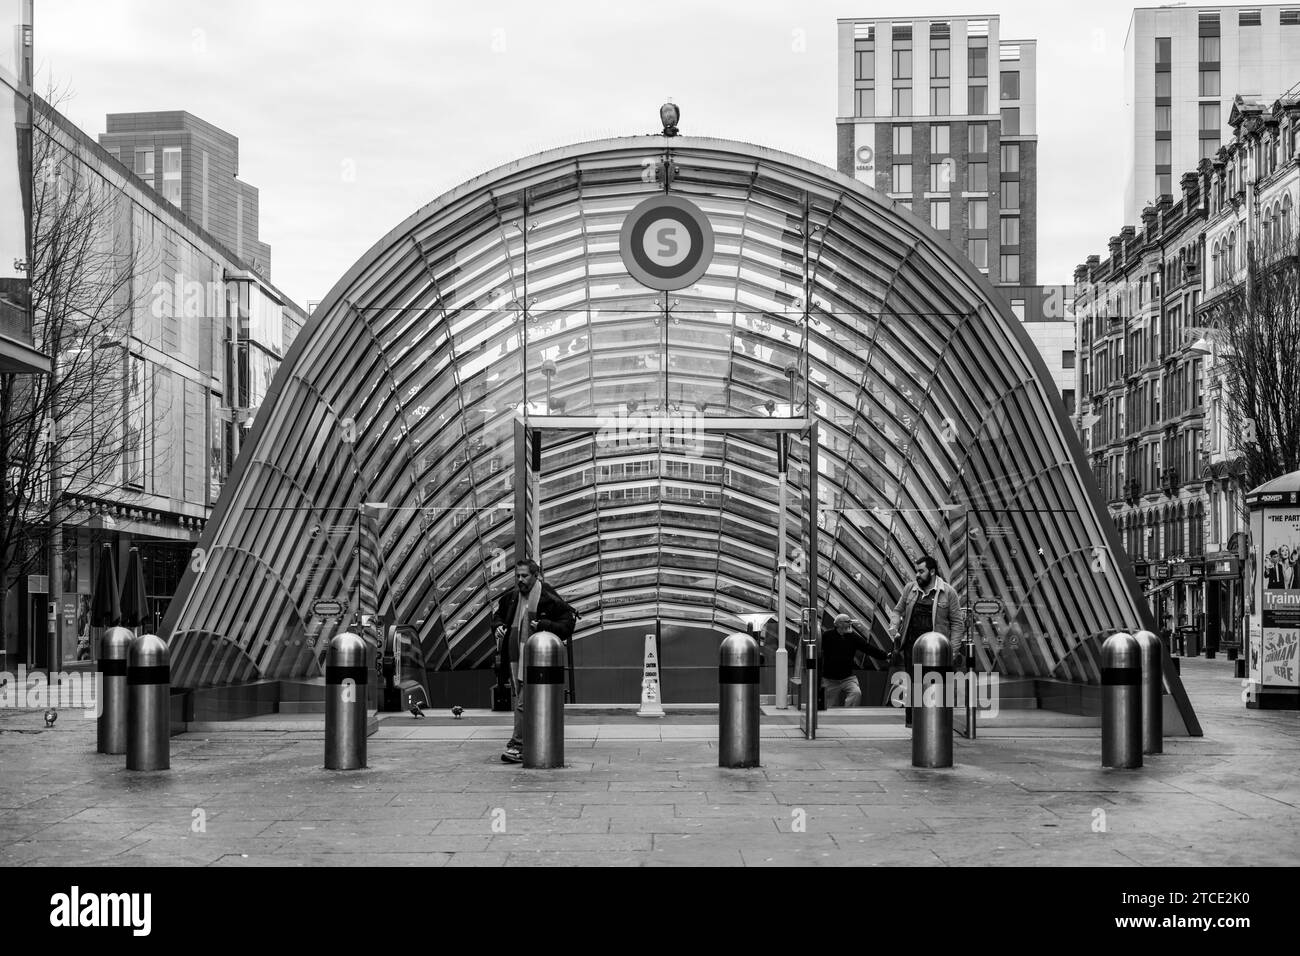 L'architecture frappante de la station de métro St.Enoch, Glasgow Banque D'Images